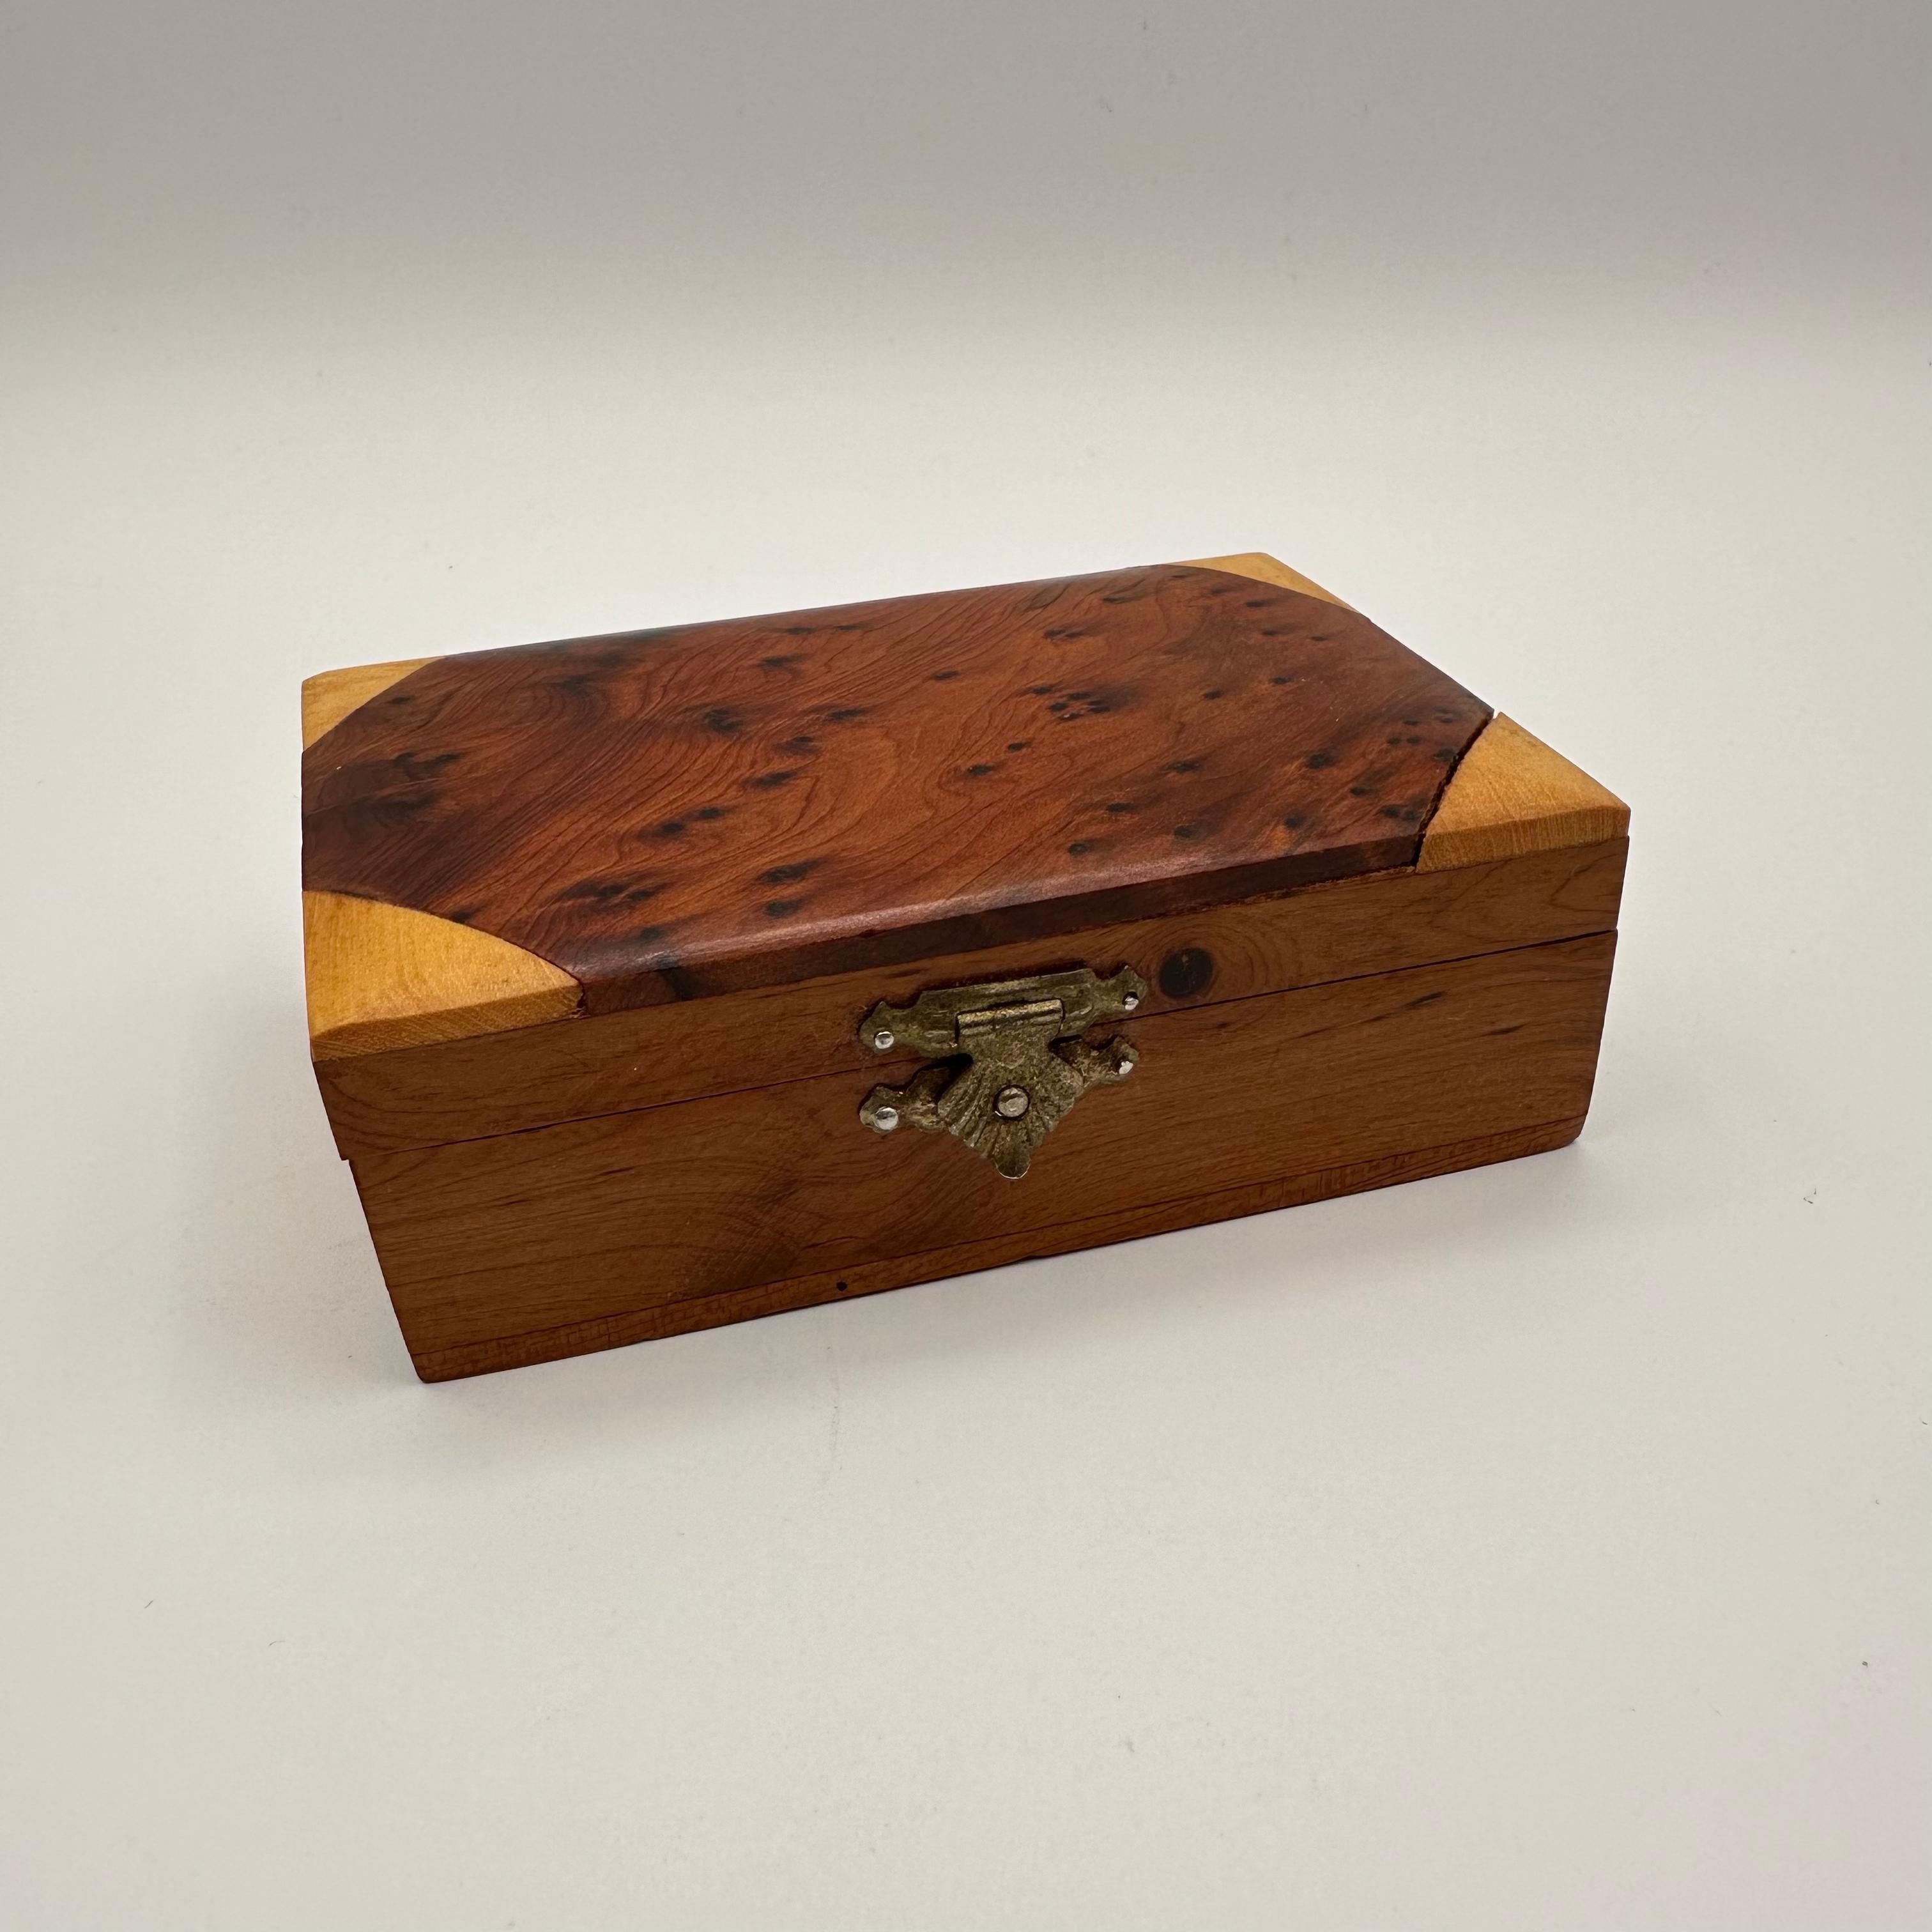 Une petite boîte vintage à couvercle rectangulaire avec de multiples essences de bois. Essentiellement dans un bois plus foncé avec de petites loupes, avec des coins en forme de triangle incrustés dans un ton de bois plus clair. Le couvercle est